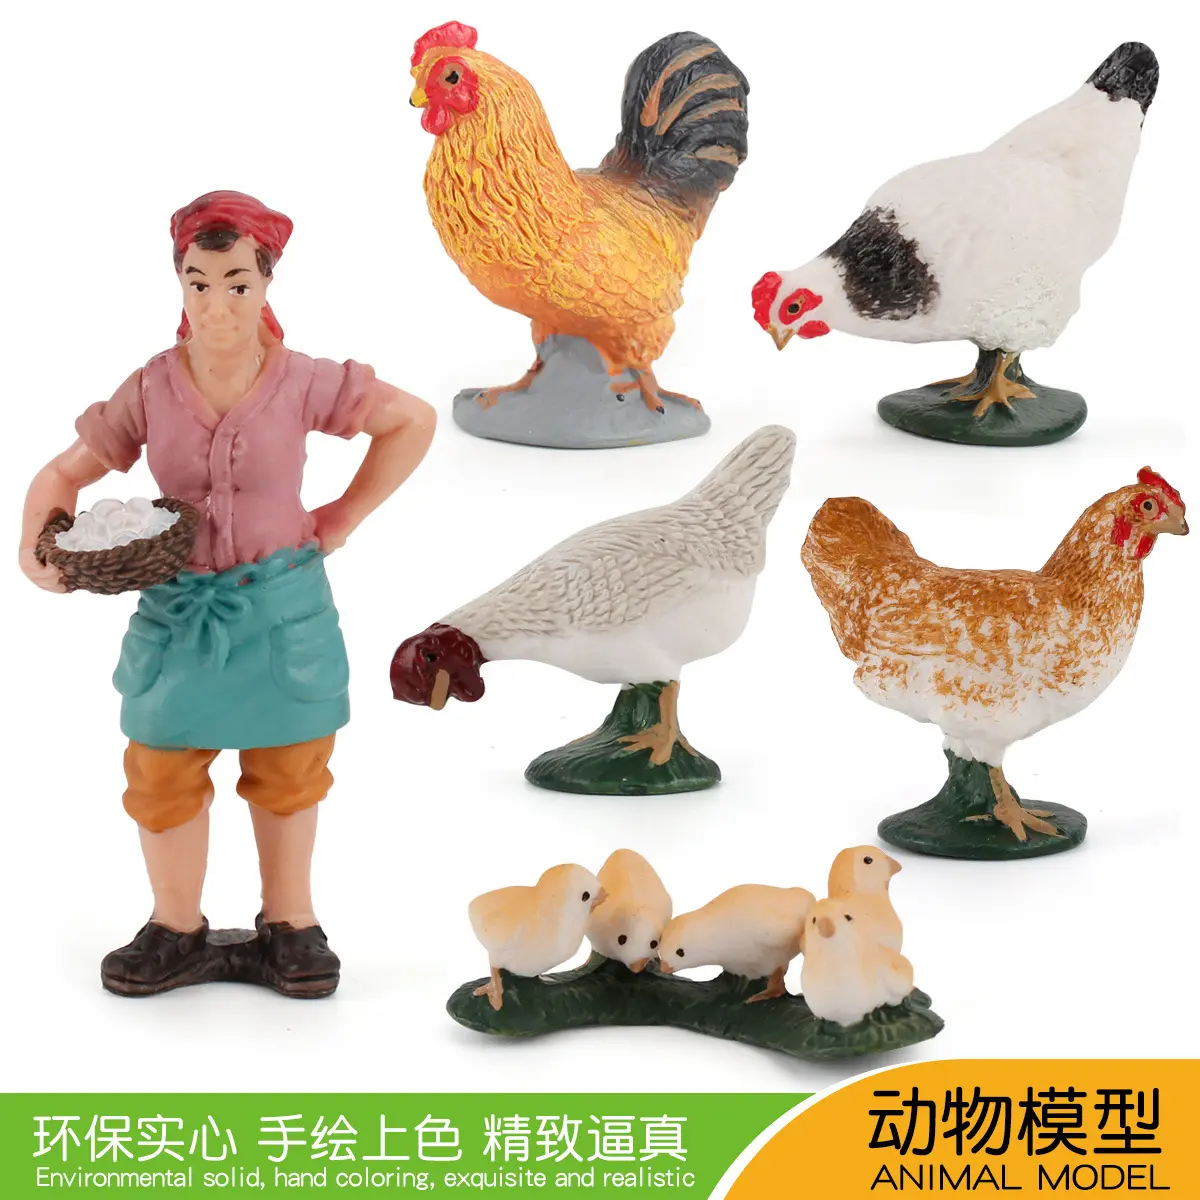 Ferme coqs, poules et poussins picorer des ornements de riz pour nourrir les poulets agriculteur femmes jardin décoration volaille poulet modèle